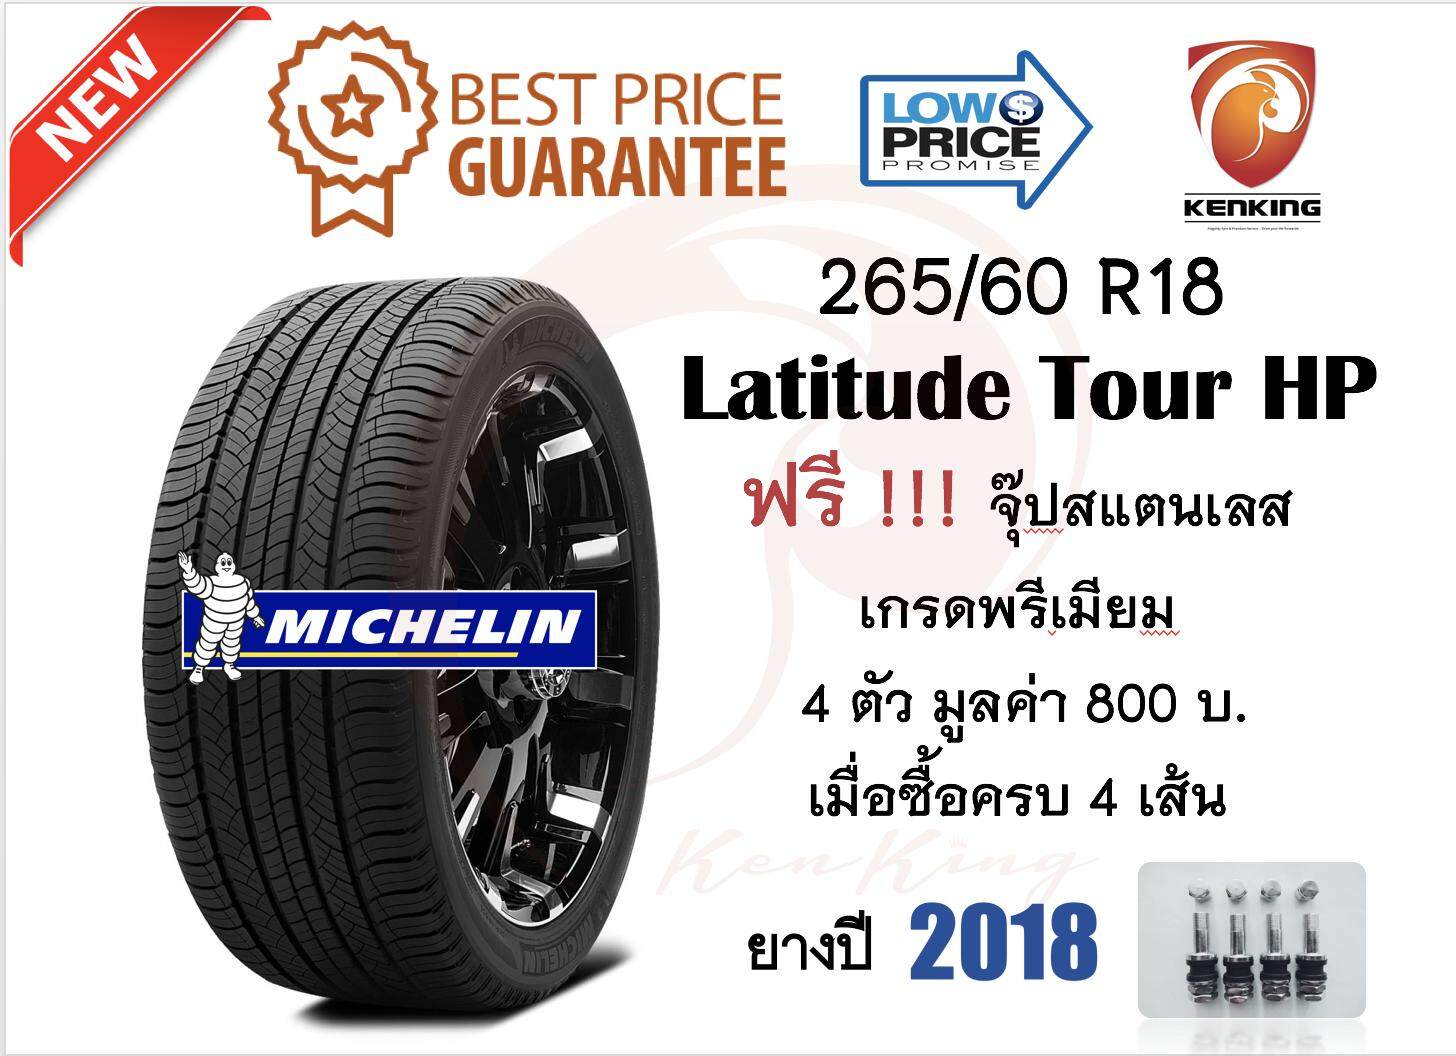 ประกันภัย รถยนต์ 2+ เพชรบุรี MICHELIN มิชลิน NEW!! ปี 2018 265/60 R18 Latitude tour HP